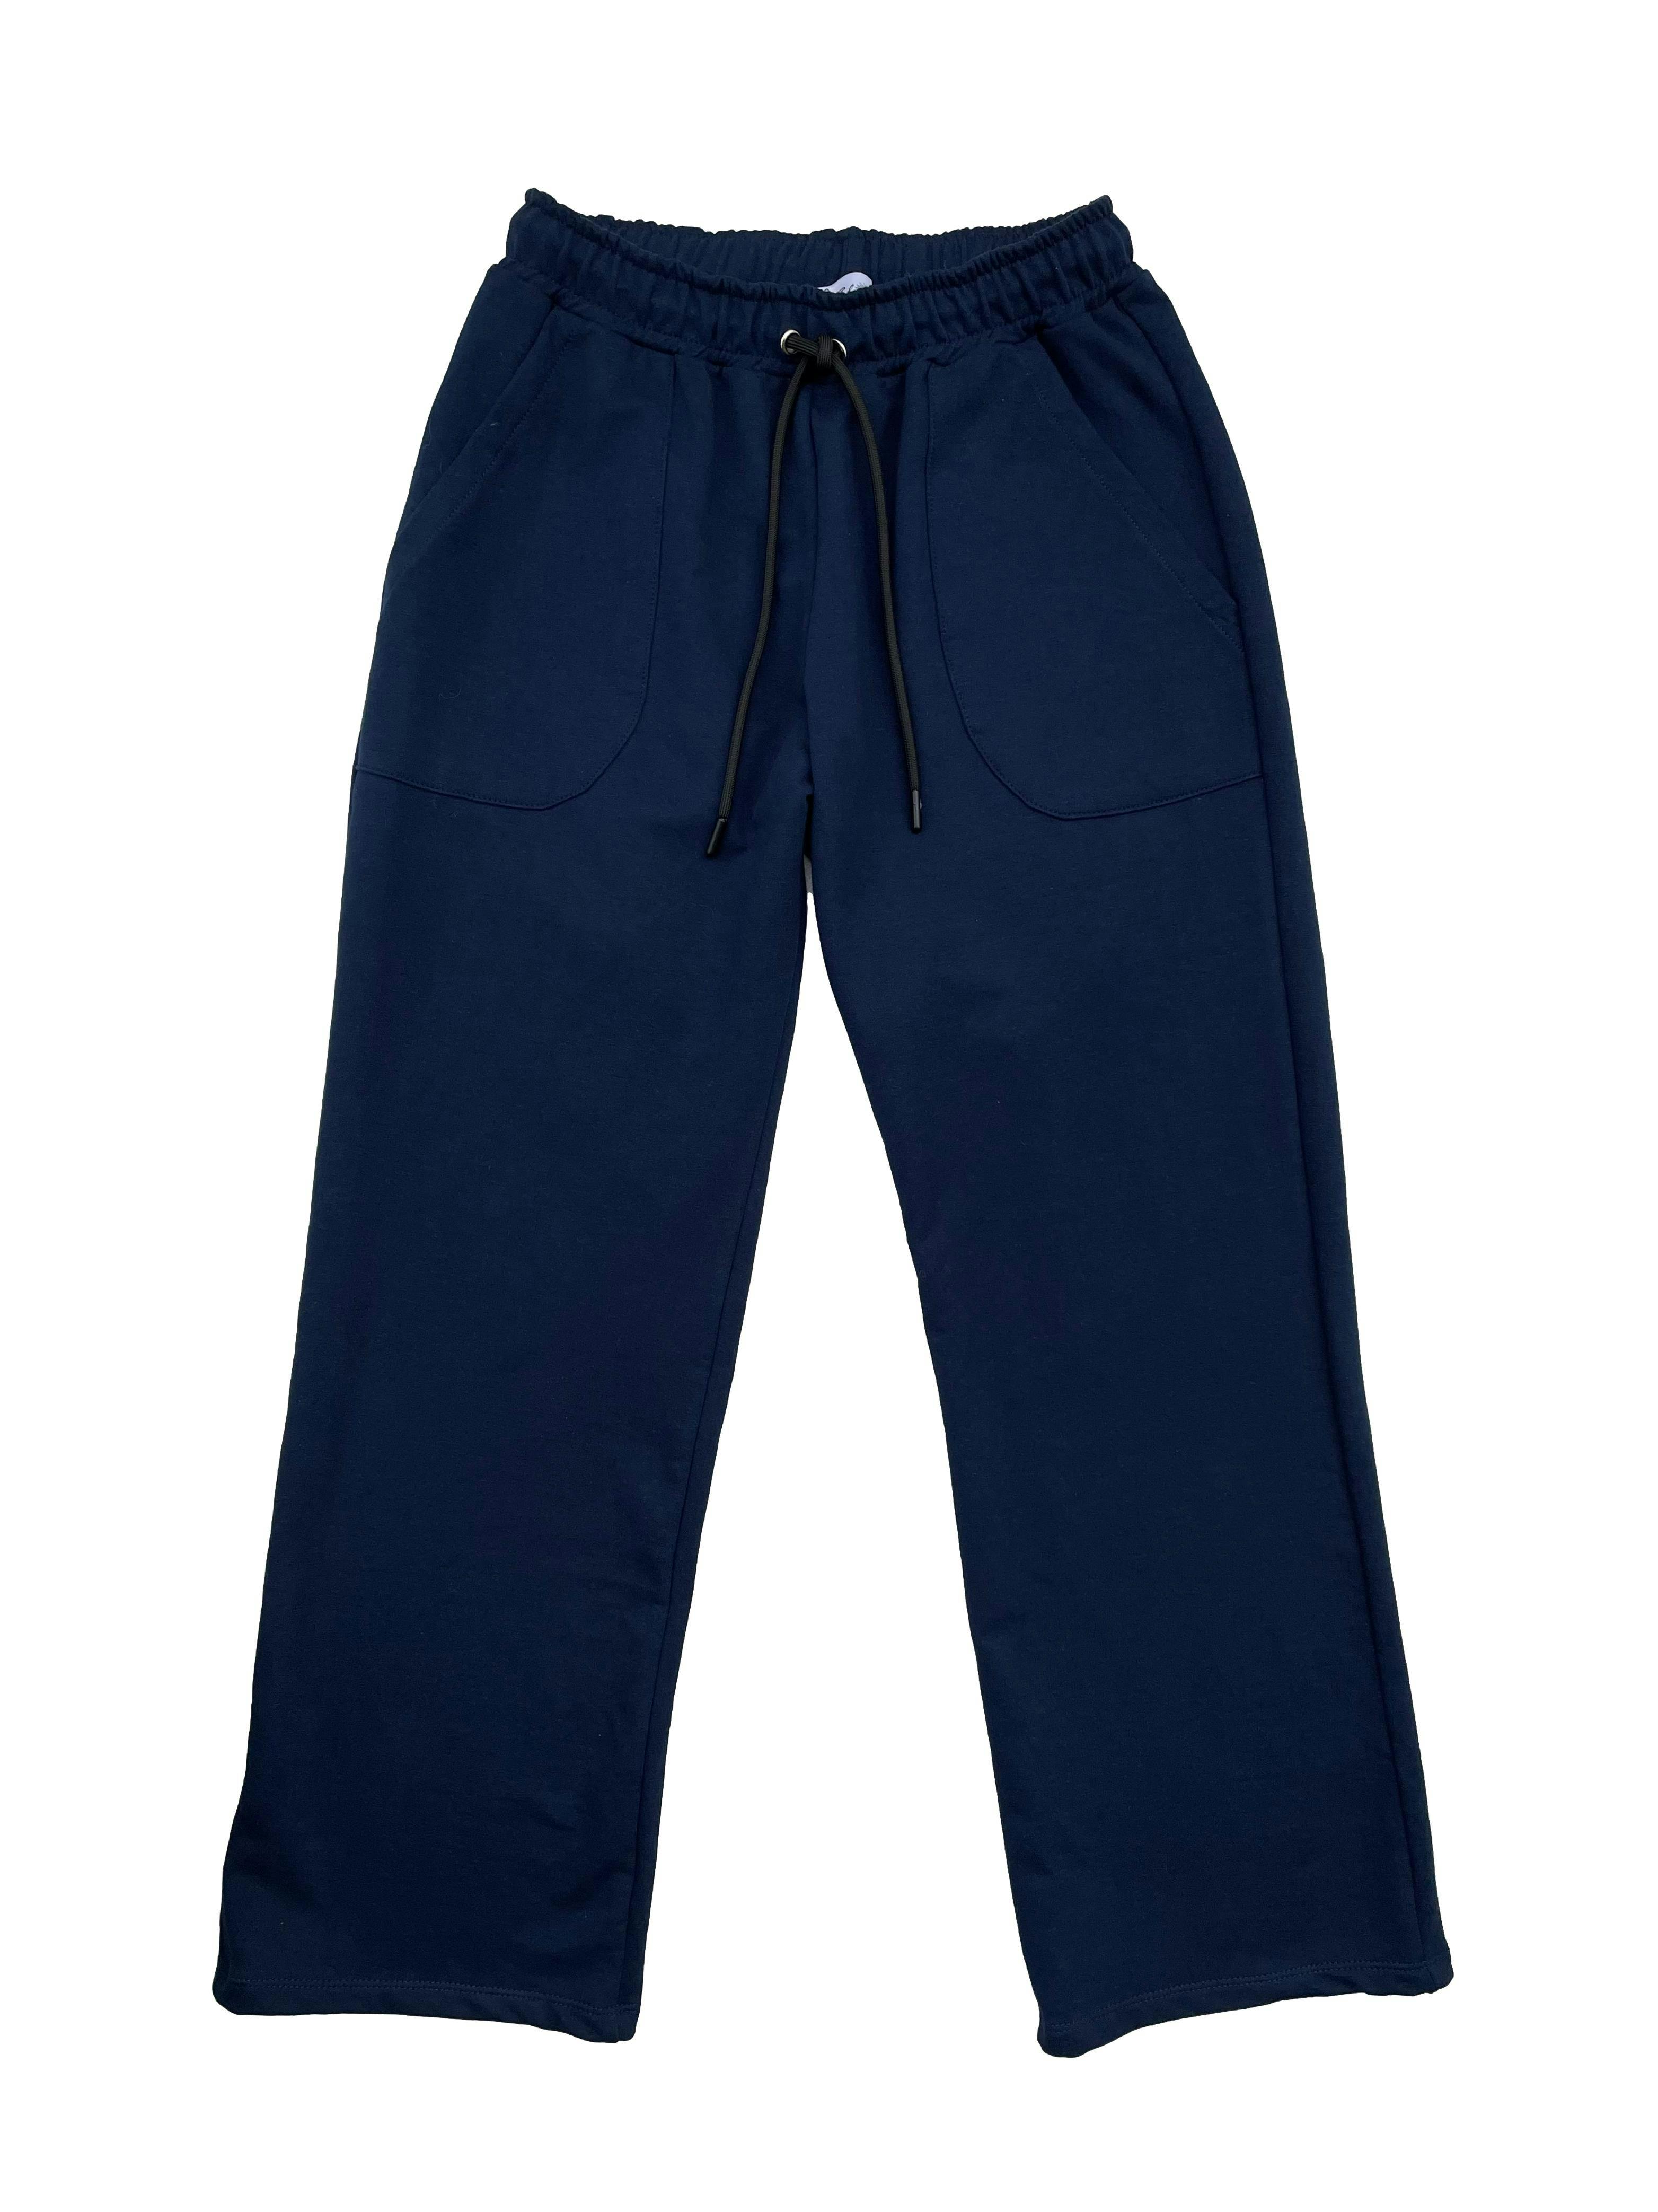 Pantalón recto de franela azul marino, pretina elástica con cordones y bolsillos frontales. Cintura 66cm sin estirar, Largo 96cm.